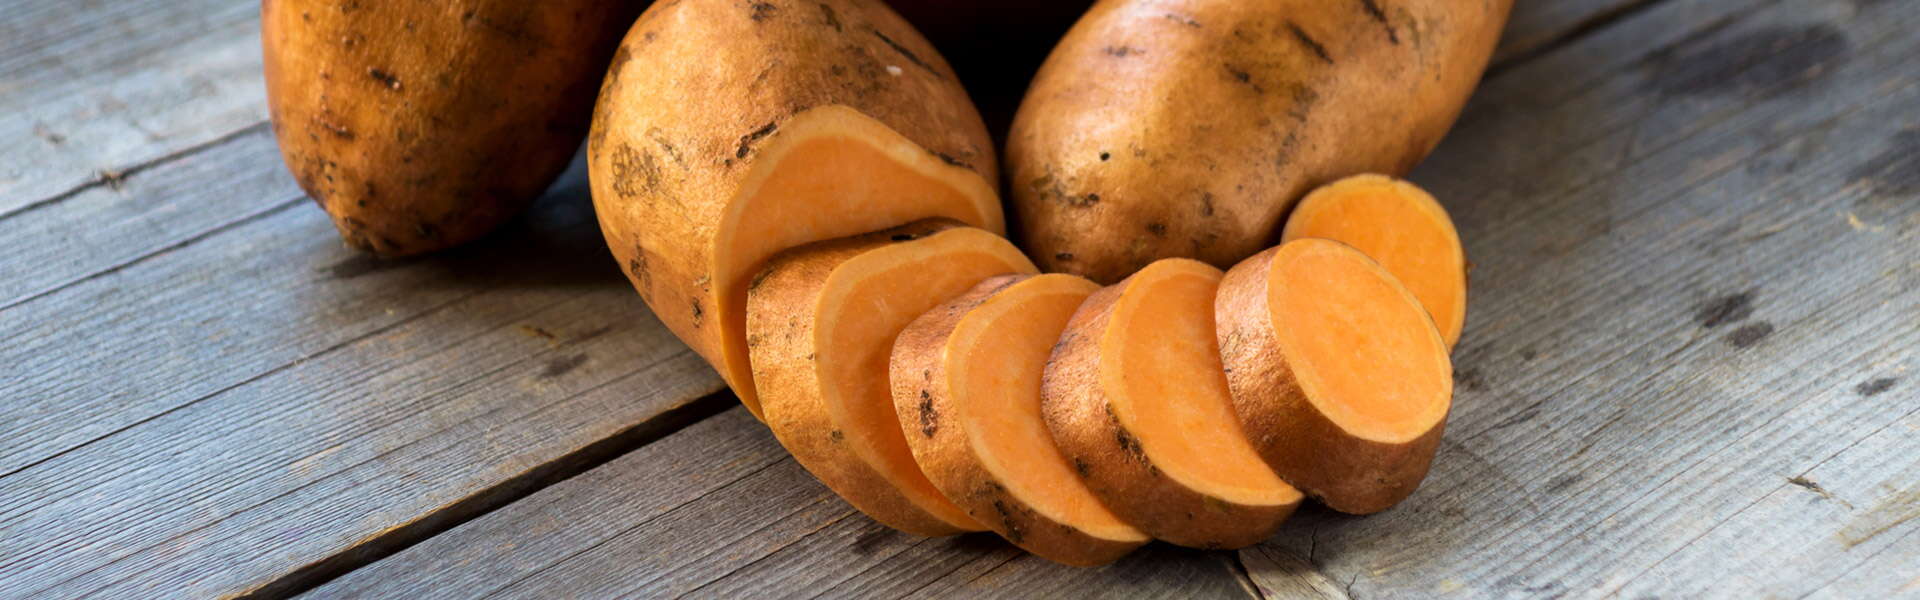 6 motivi per cui le patate americane sono meglio di quelle normali